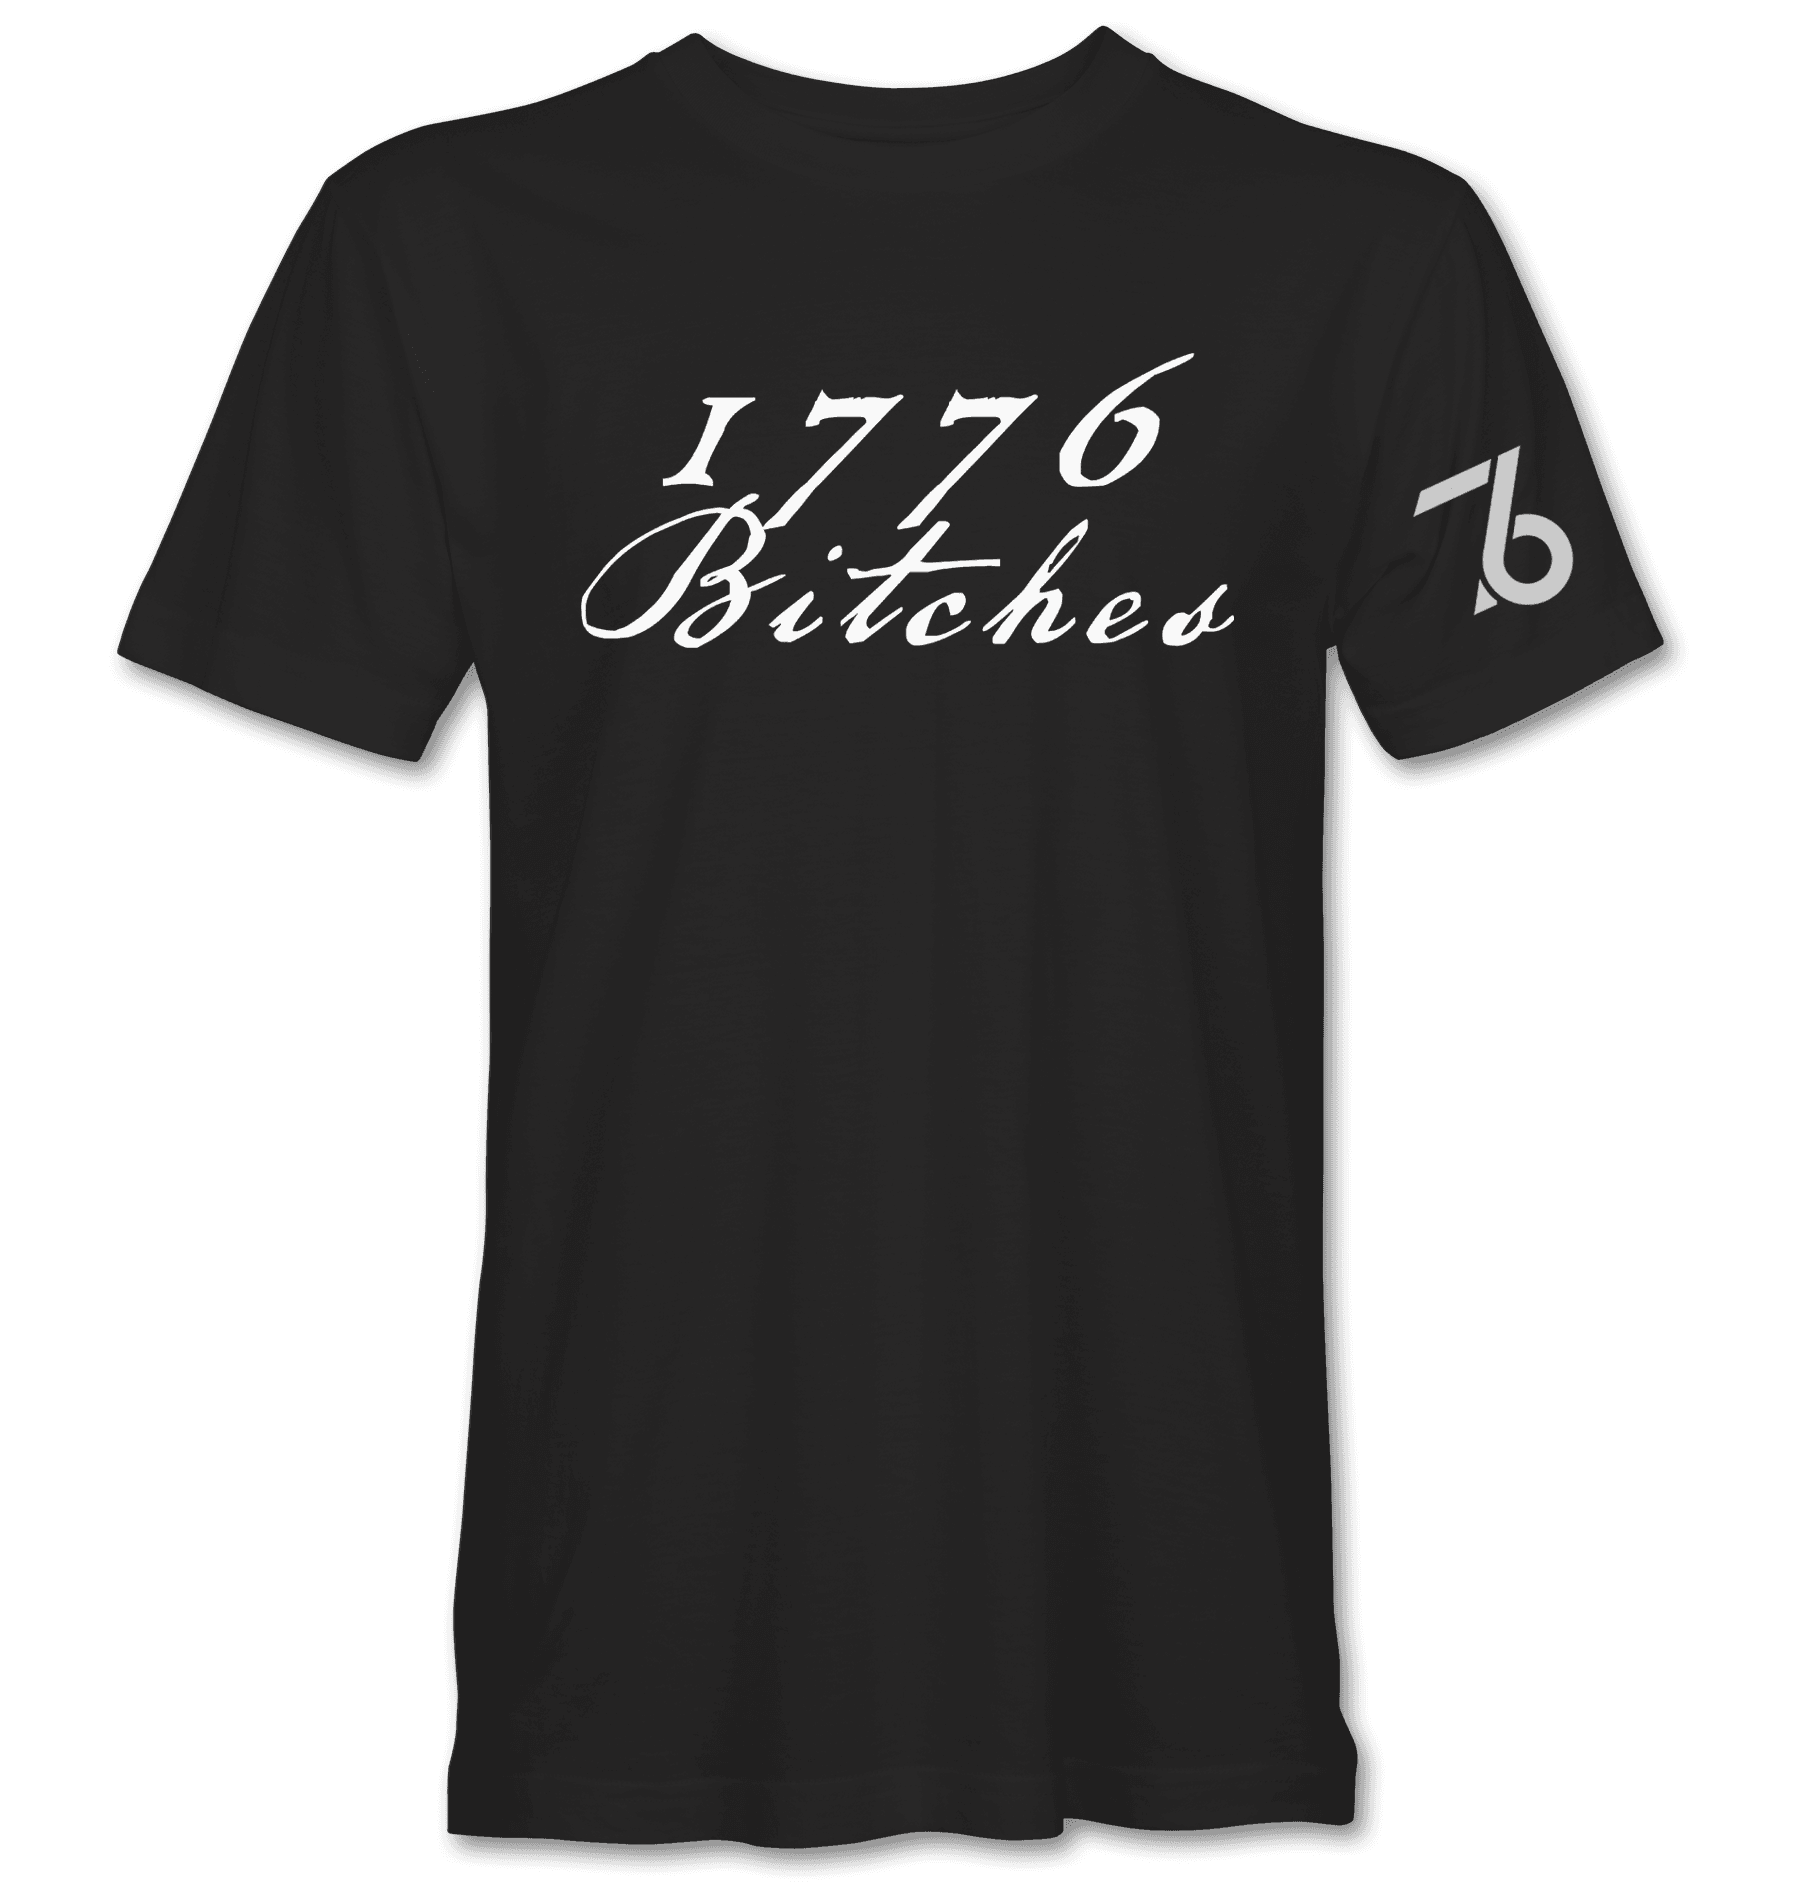 1776 BITCHES